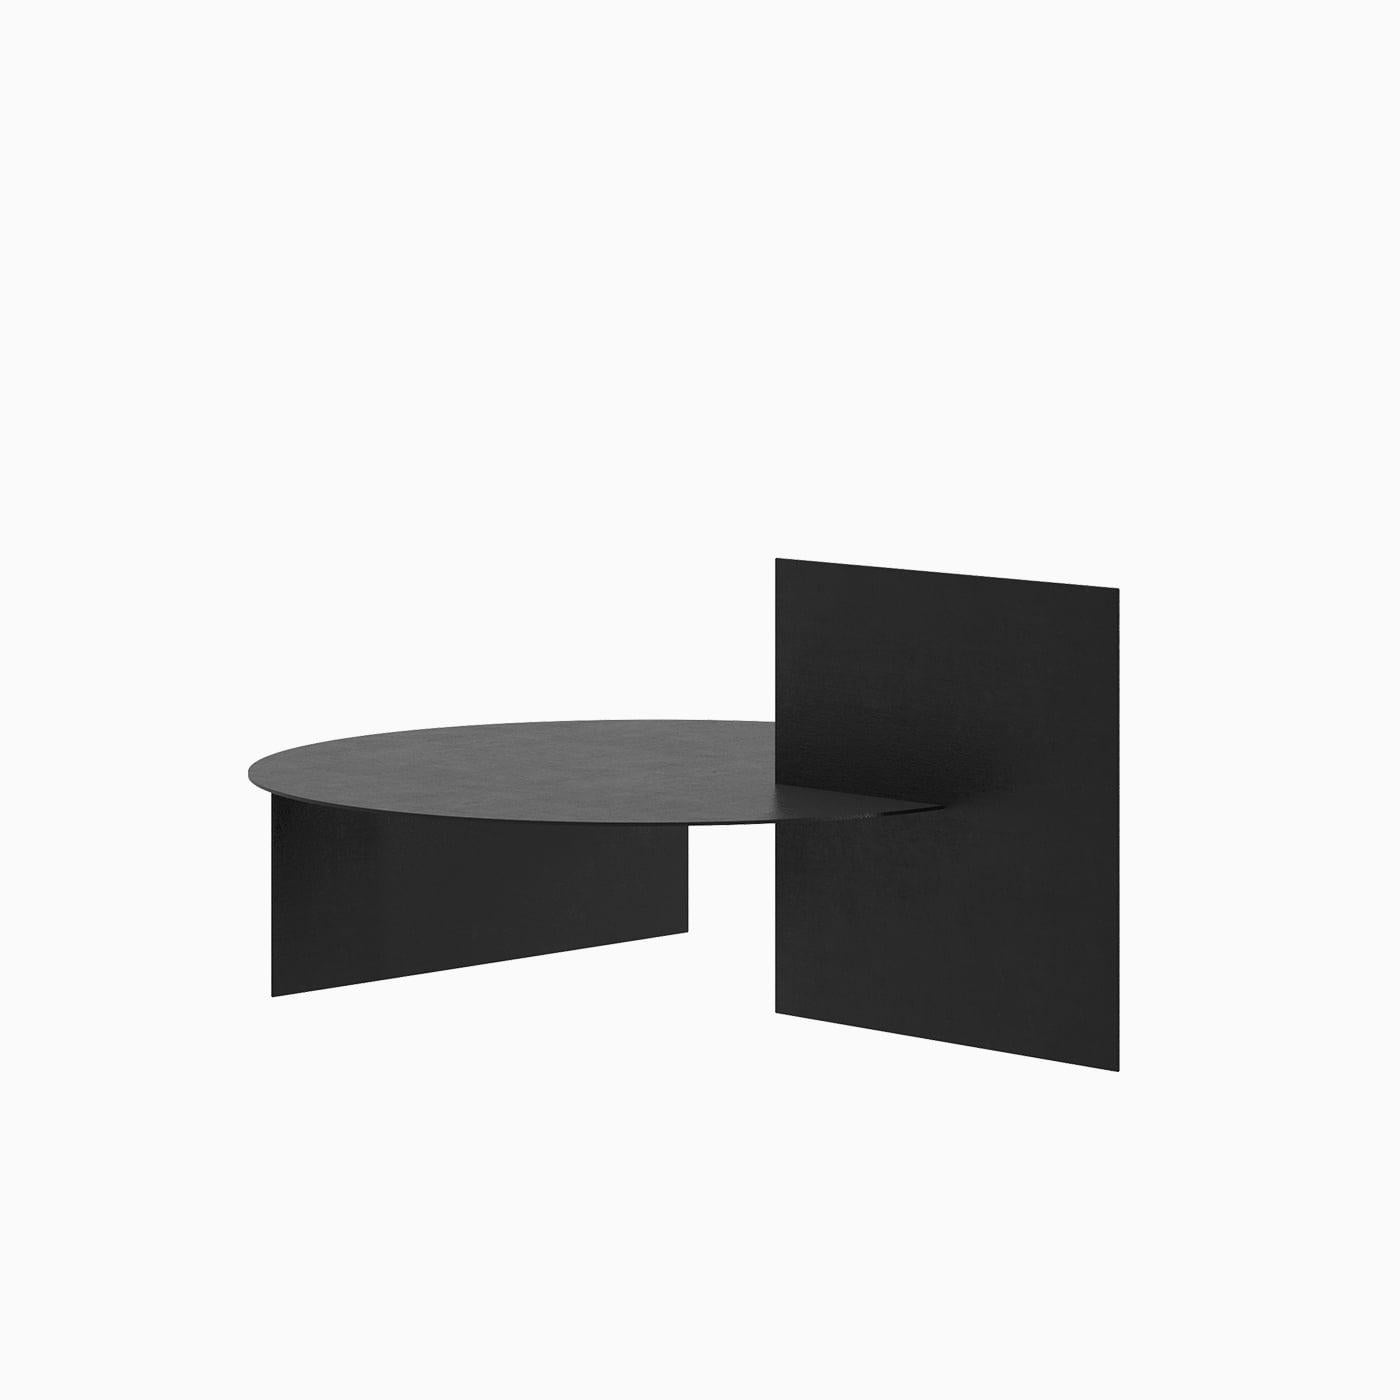 Conceptualisée en 2019 par Leonardo Floresvillar pour l'hôtel W de Mexico, la Geometric Coffee Table est une exploration de la géométrie réductrice tout en fonctionnant comme une table basse convenant à la fois à l'intérieur et à l'extérieur. 
